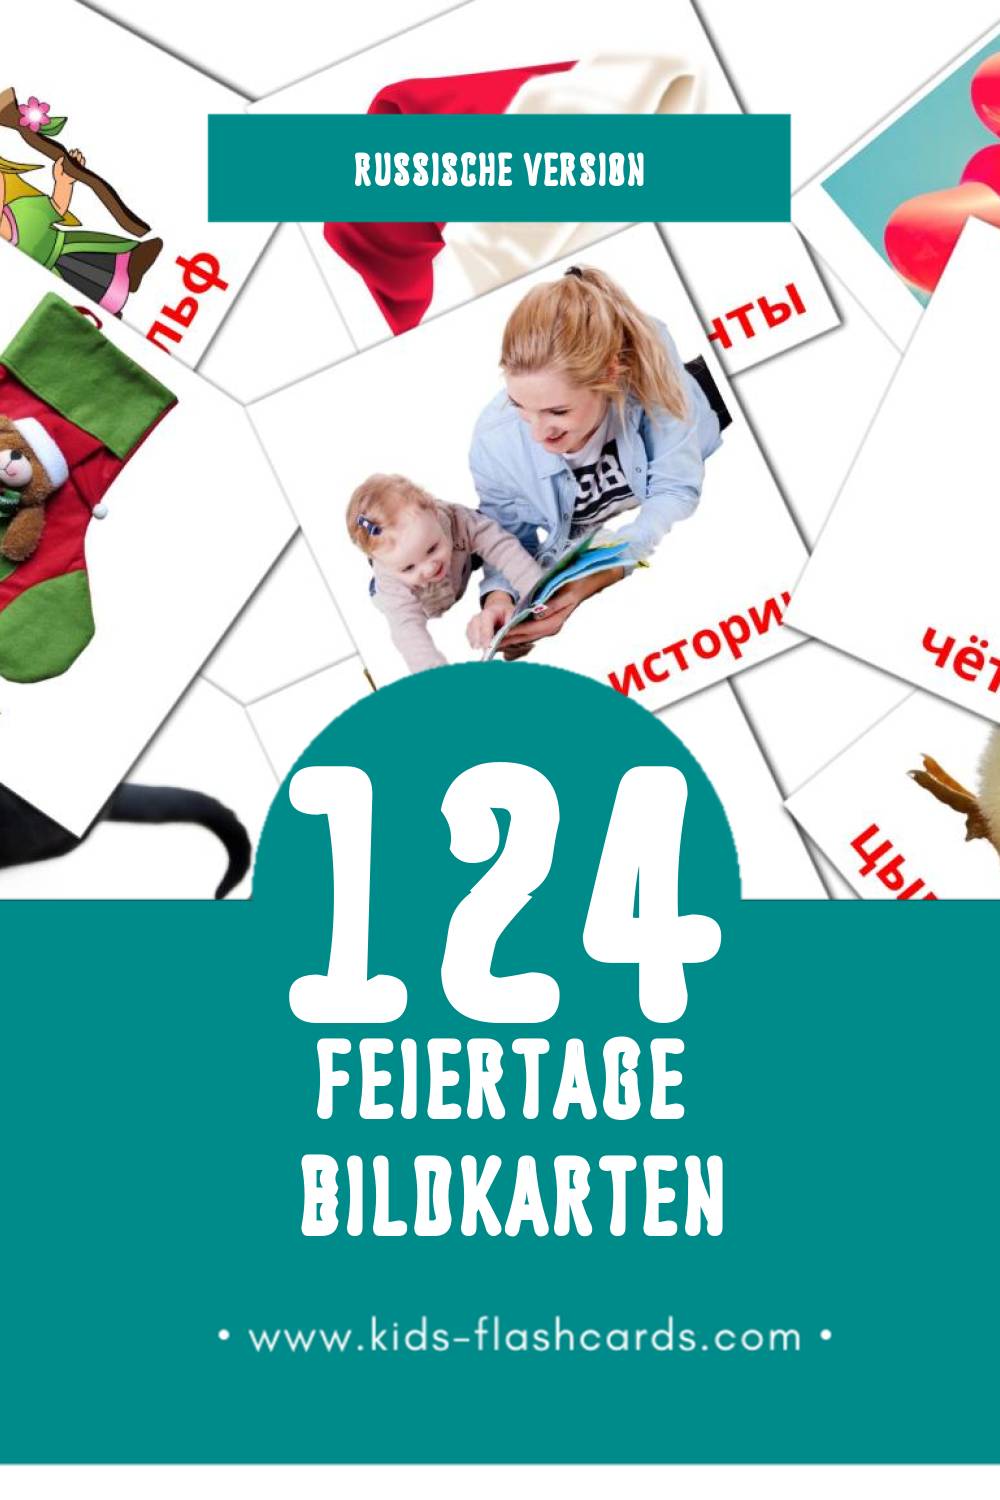 Visual Праздники Flashcards für Kleinkinder (124 Karten in Russisch)